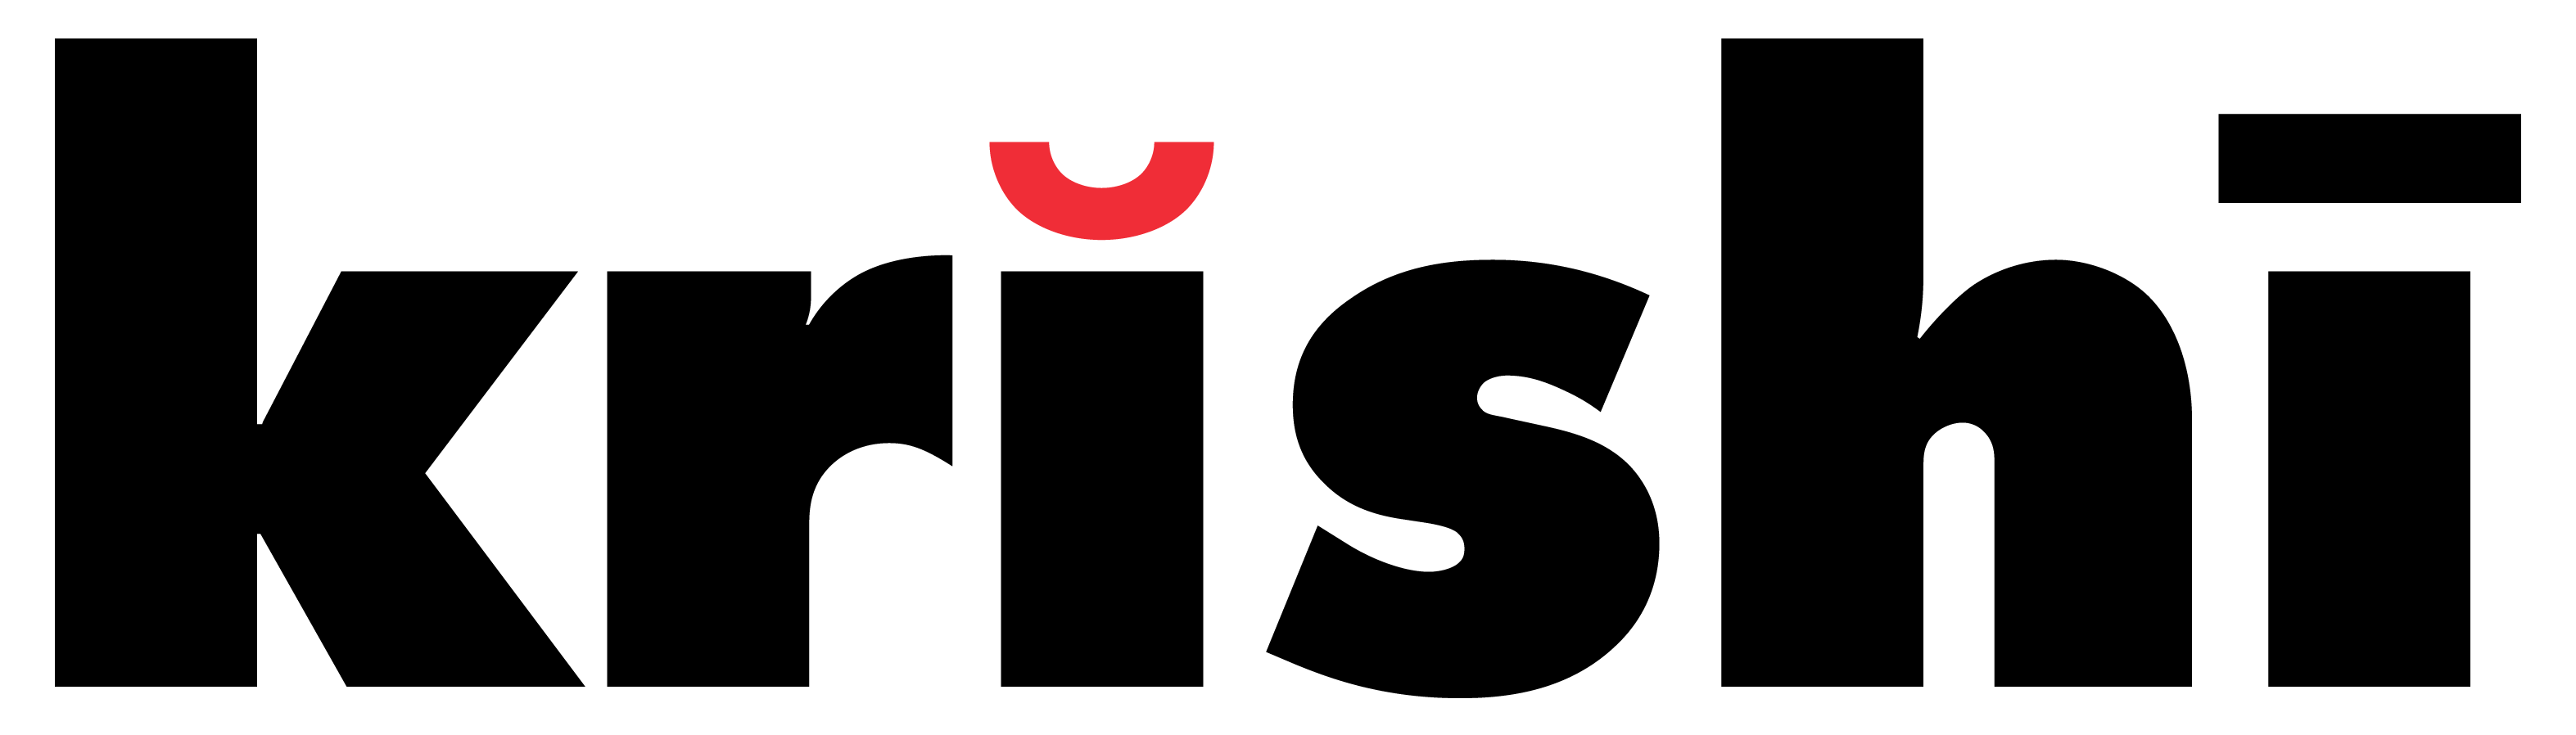 Krishi logo